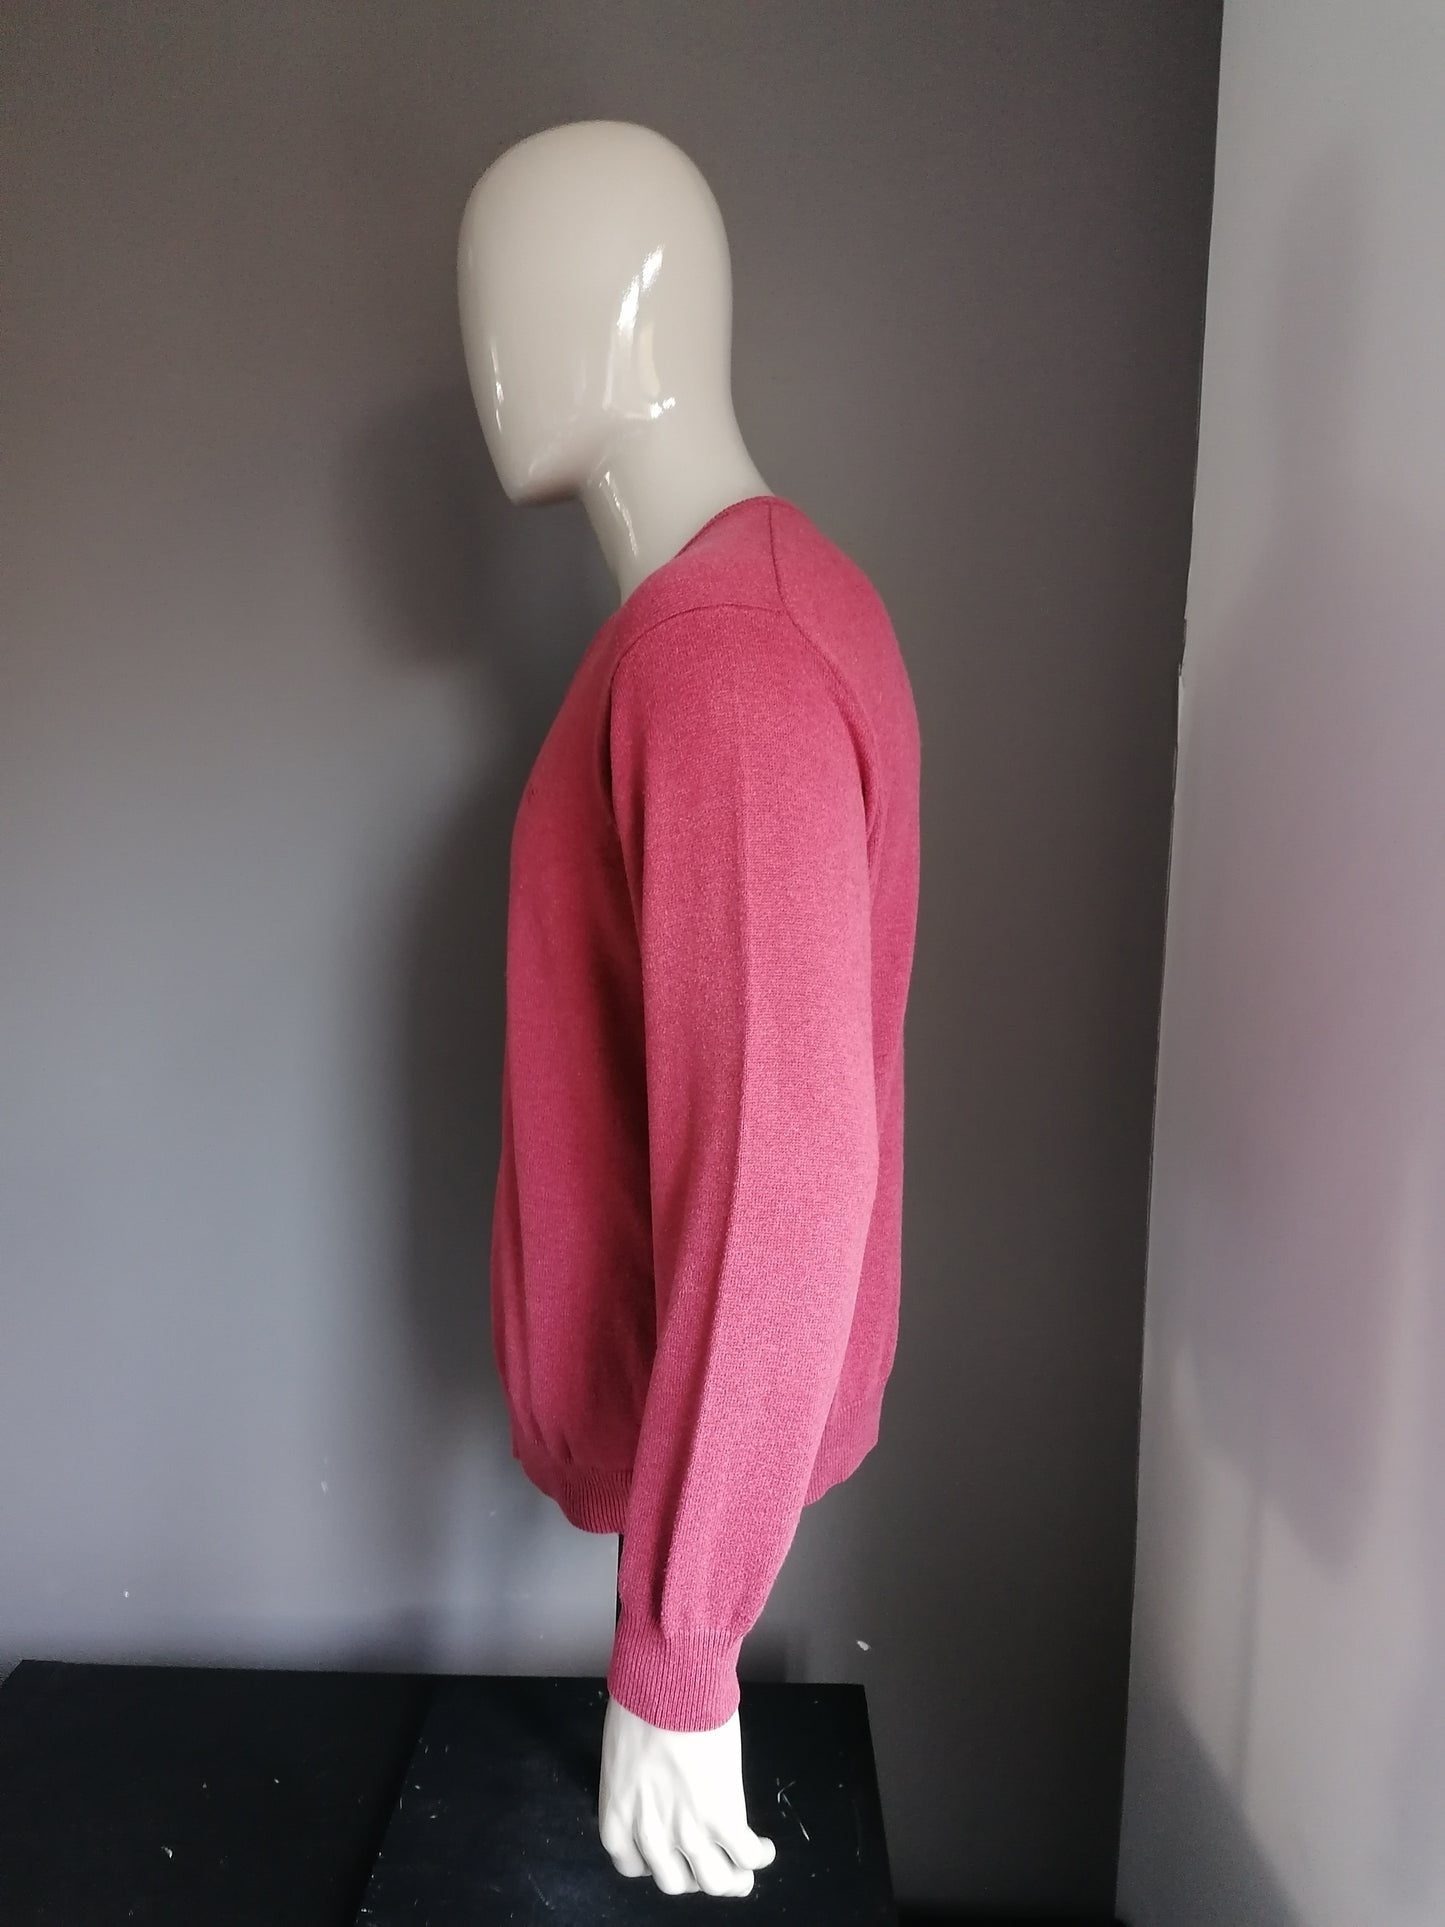 Suéter de Wolsey con cuello en v. Color rosa oscuro de color. Talla L.